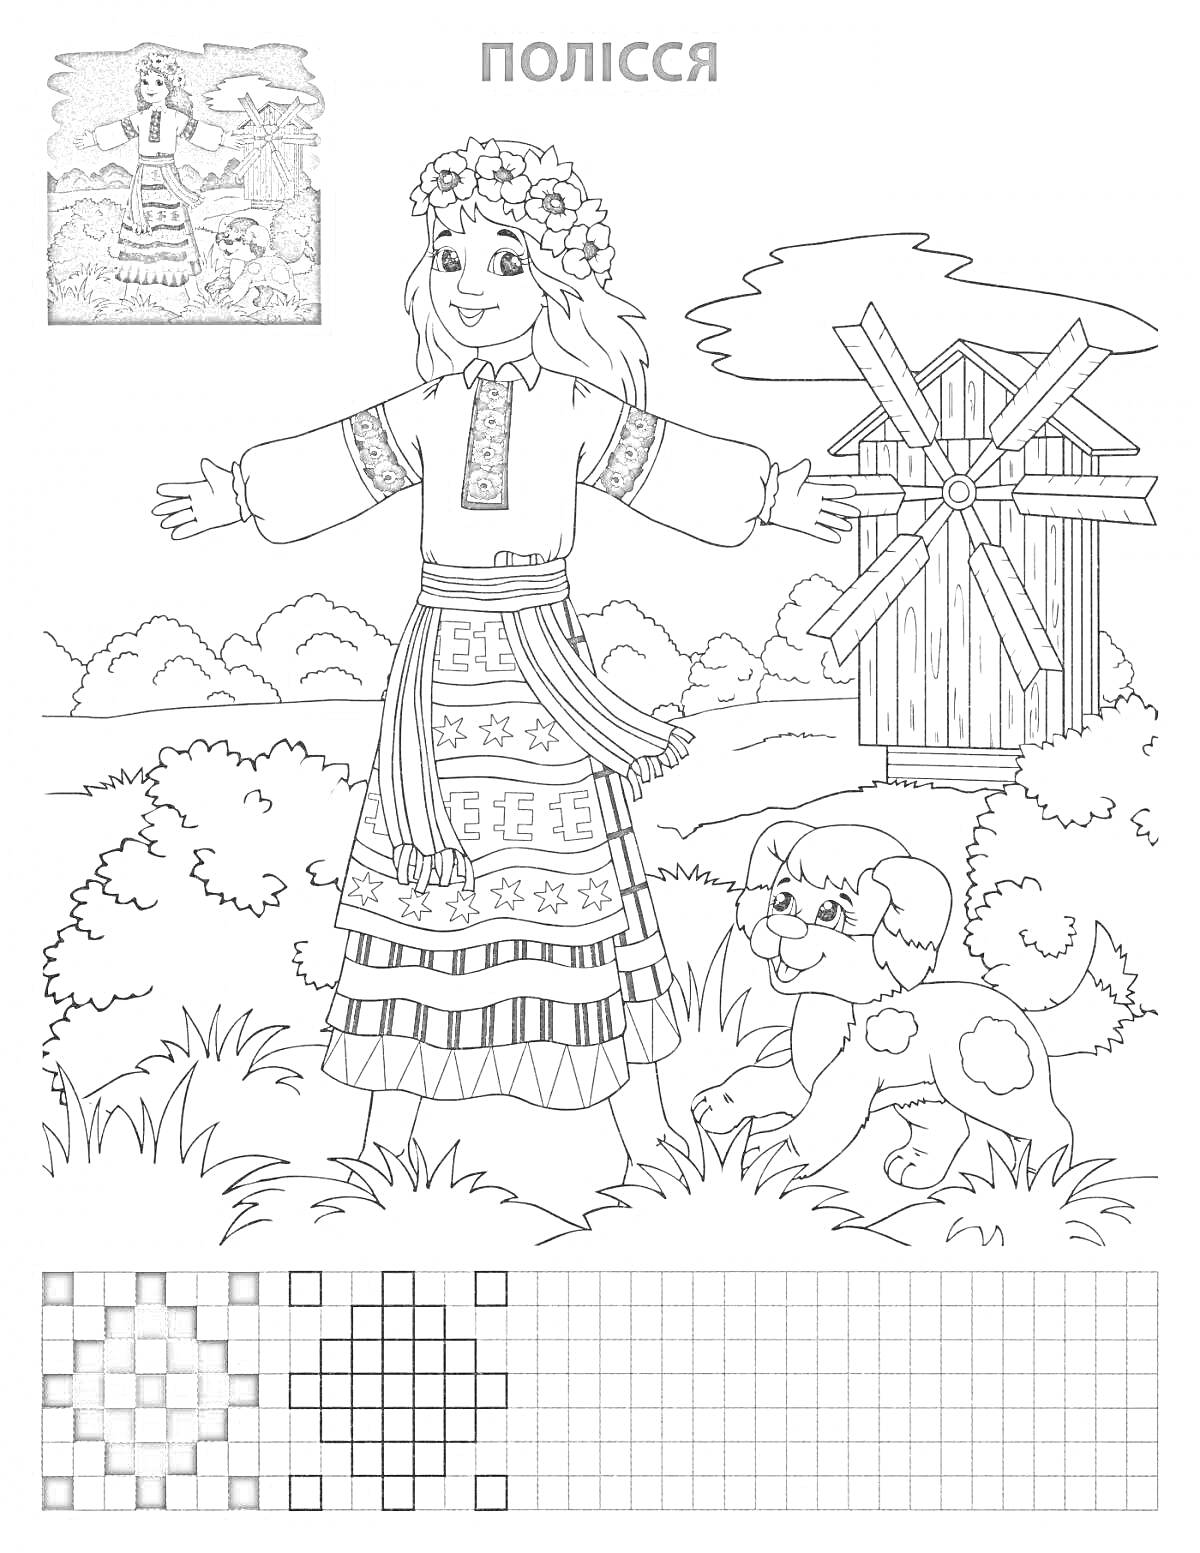 Раскраска Девочка в украинской национальной одежде с венком на голове, пес, деревянная мельница и деревья на заднем плане